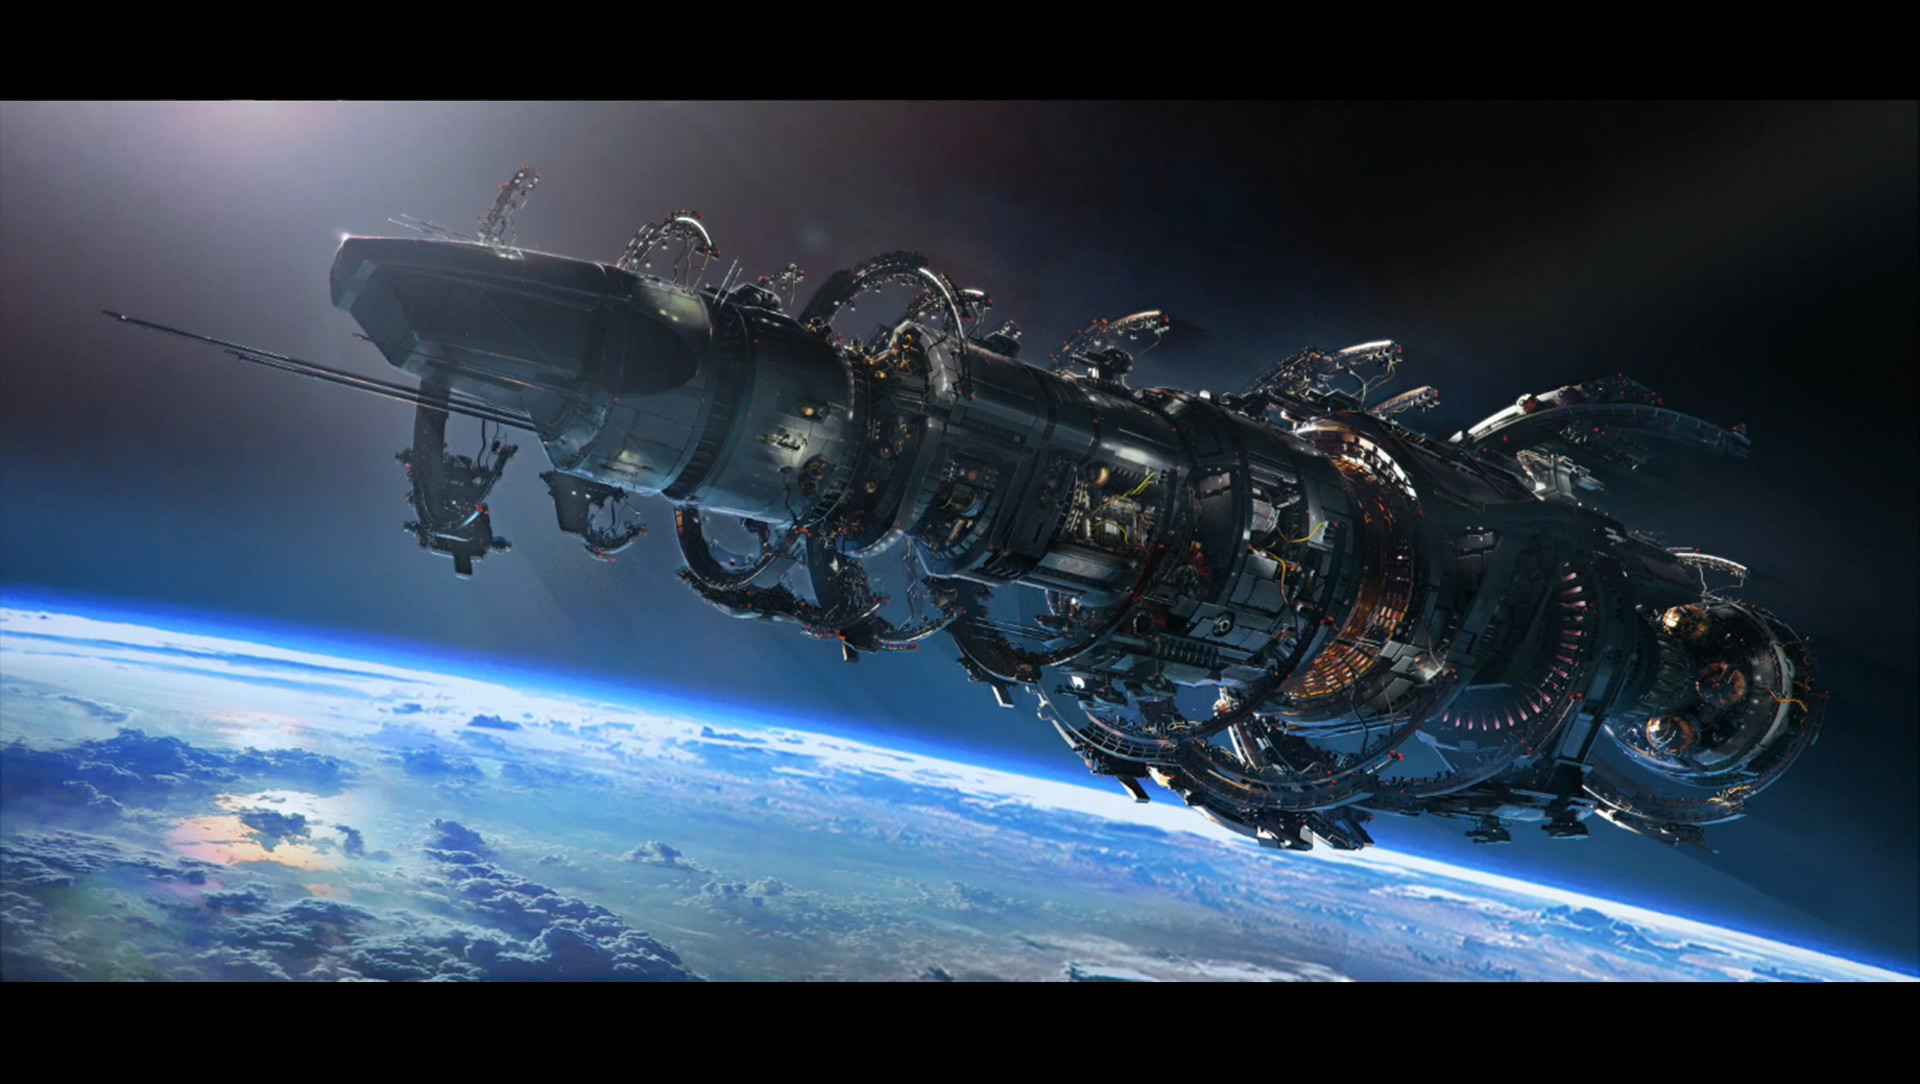 fond d'écran de science fiction,cosmos,vaisseau spatial,espace,oeuvre de cg,atmosphère